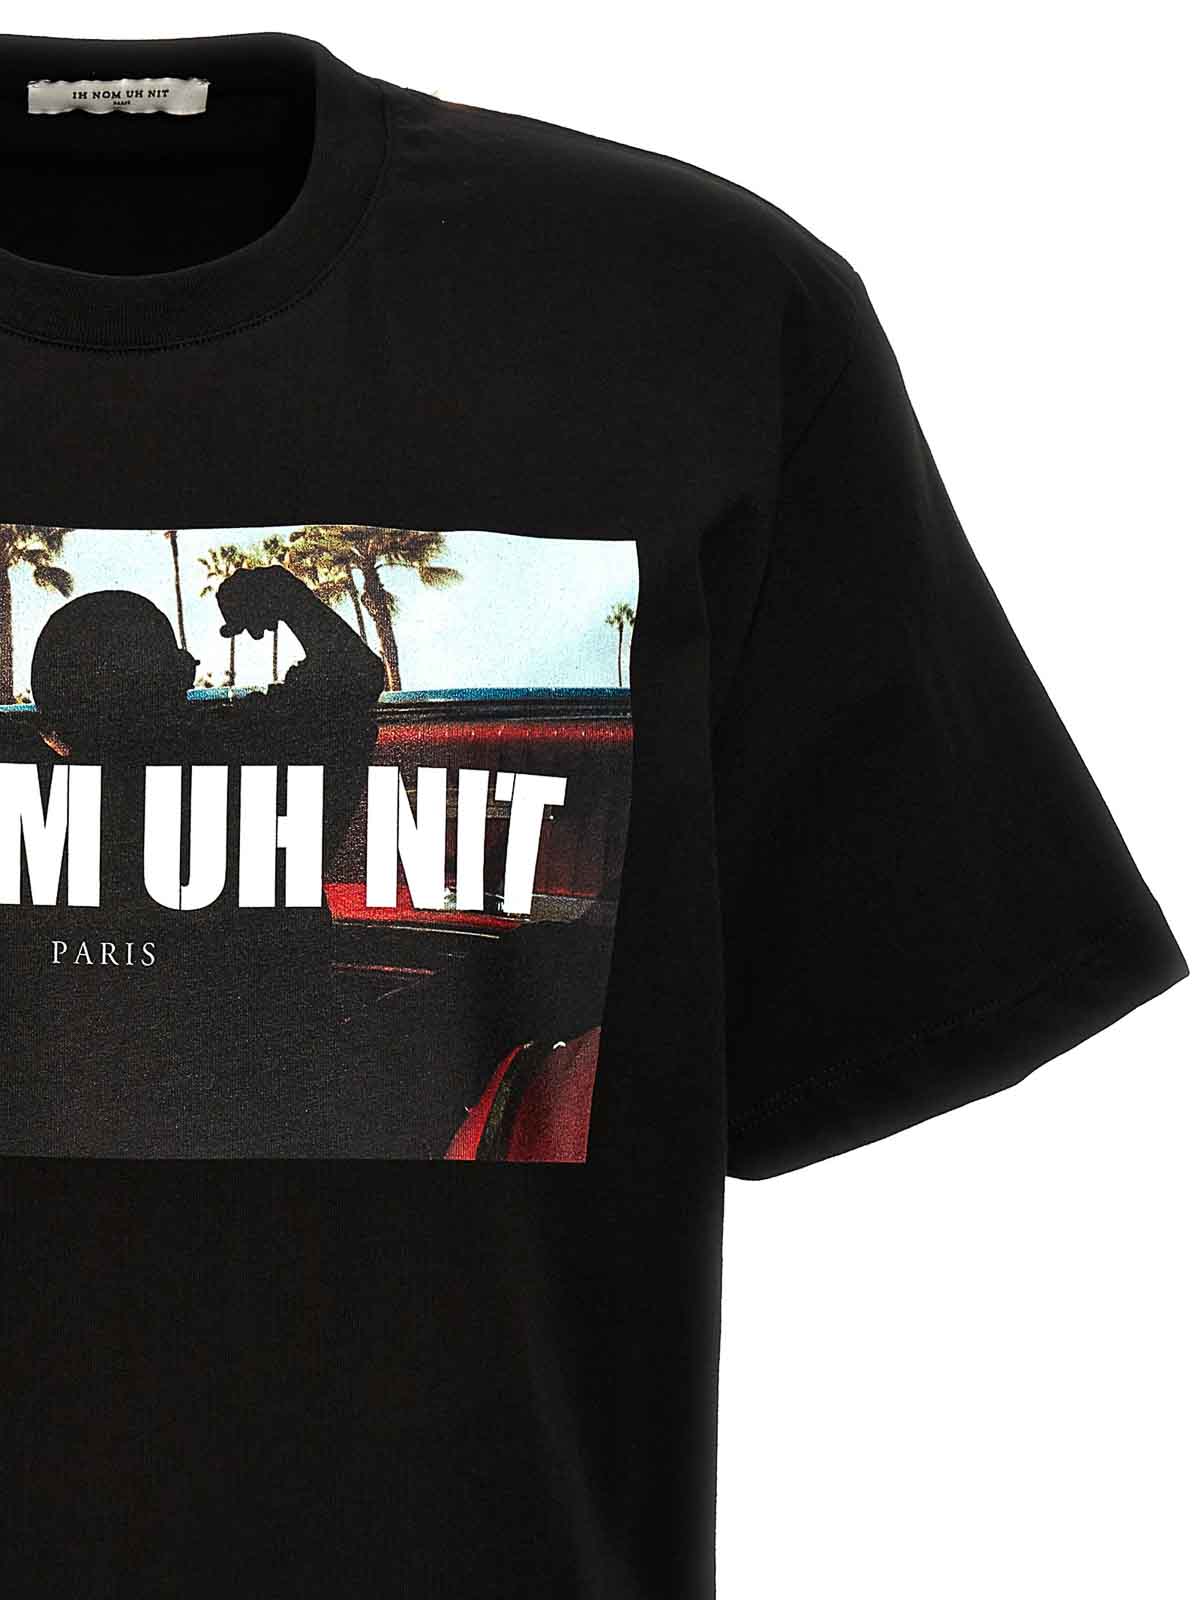 Shop Ih Nom Uh Nit Camiseta - Negro